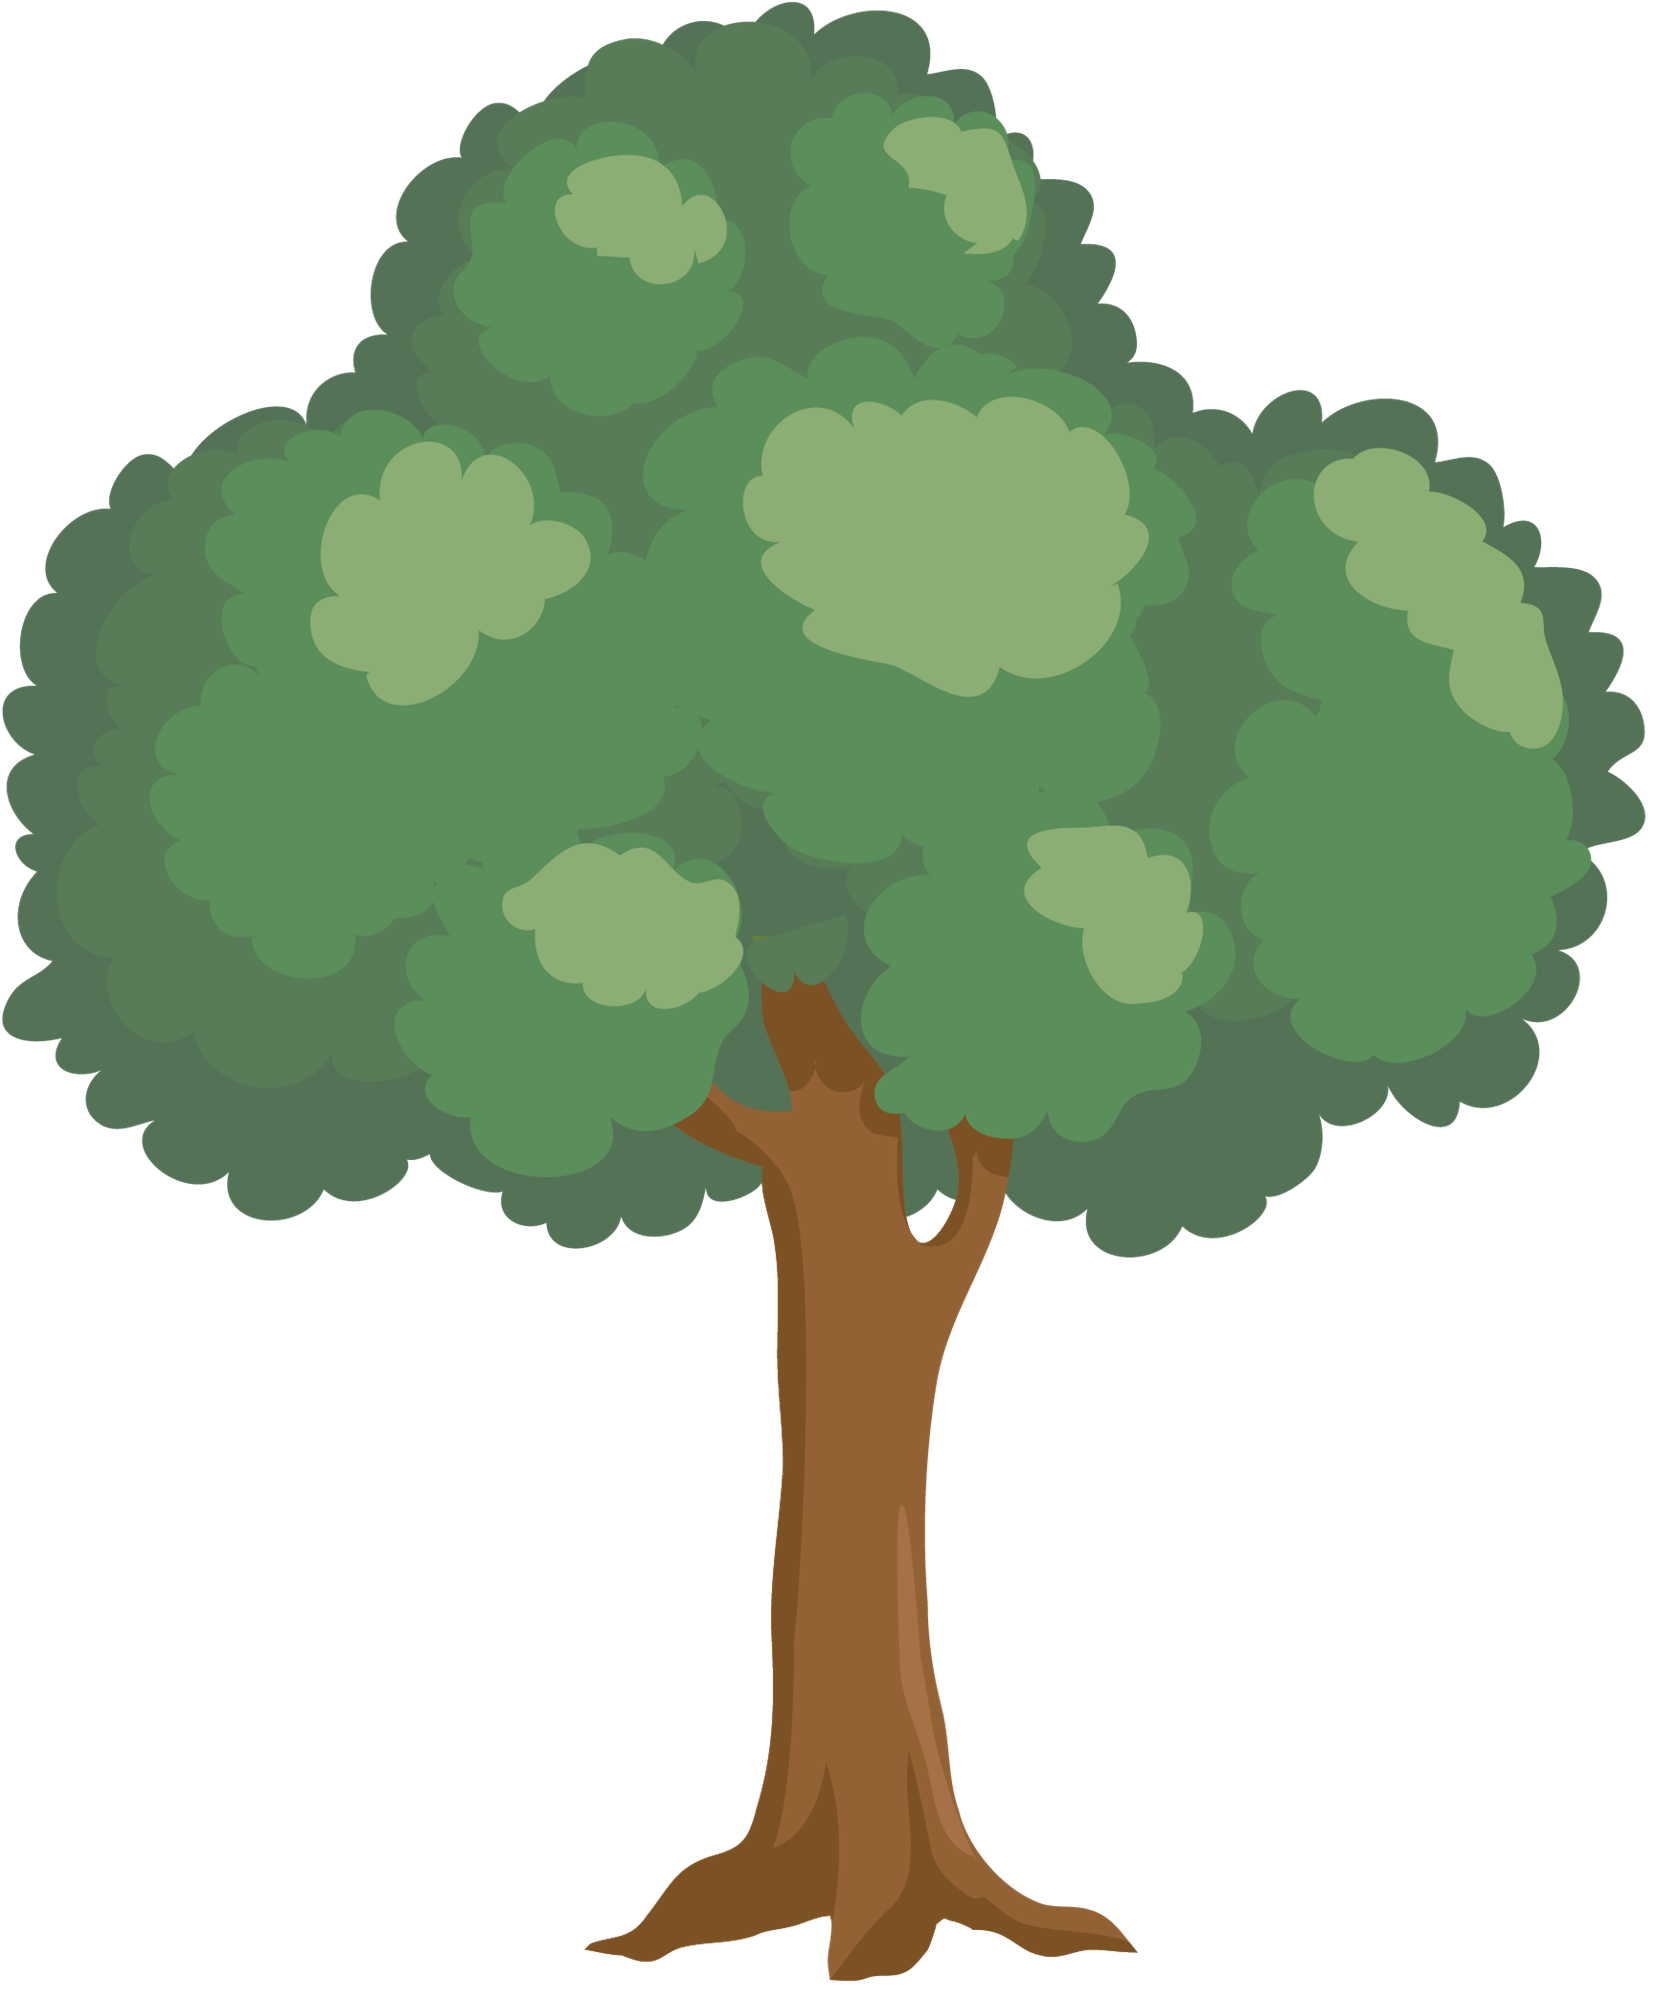 Tree graphic